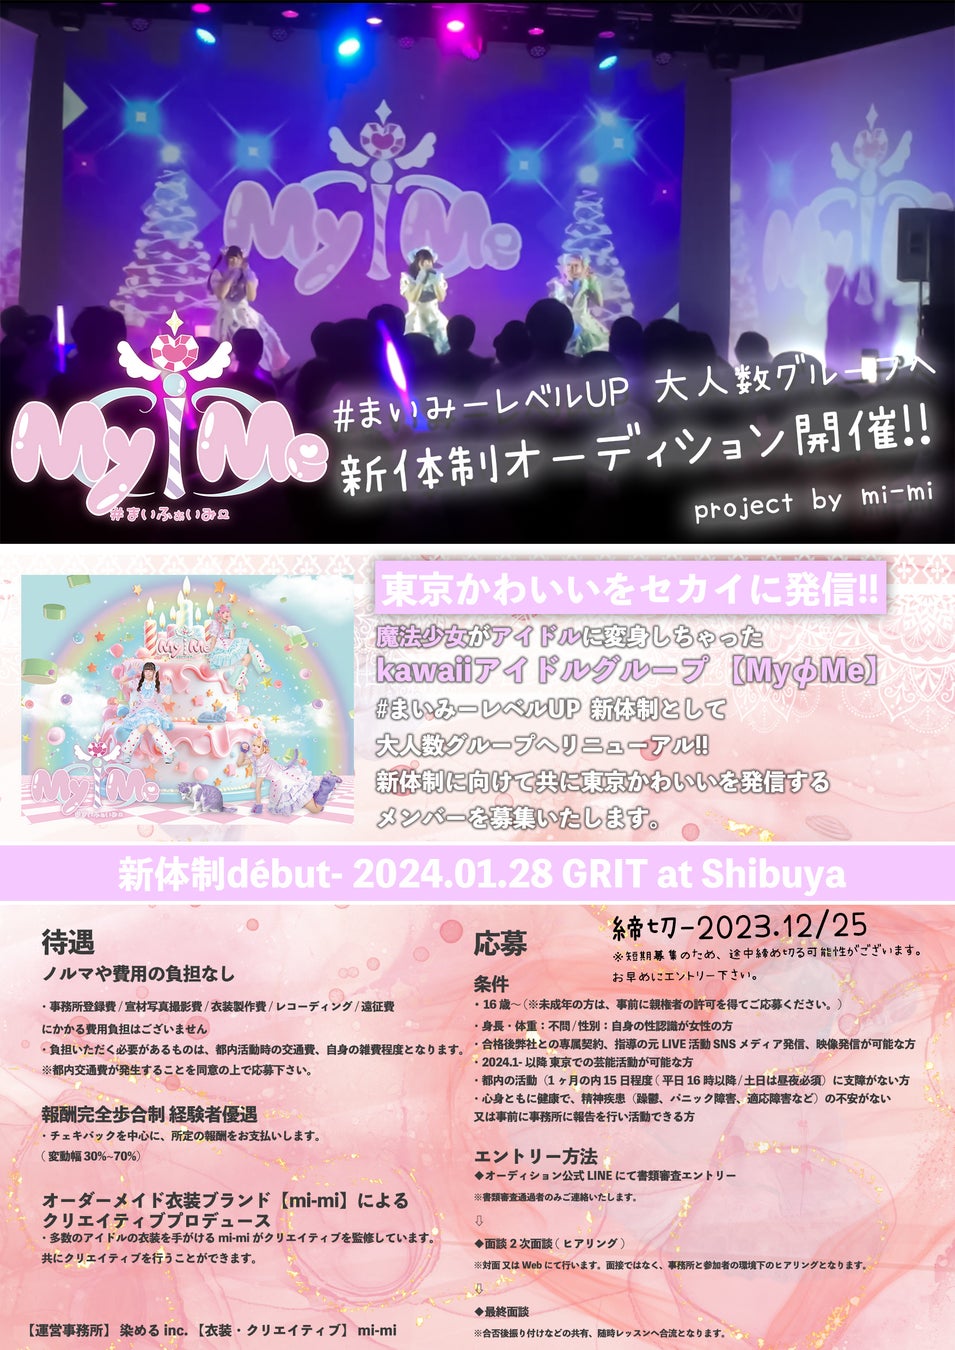 新体制アイドルオーディション募集を開始!!東京かわいいをセカイに発信する「MyφMe」が大規模レベルアップ!!